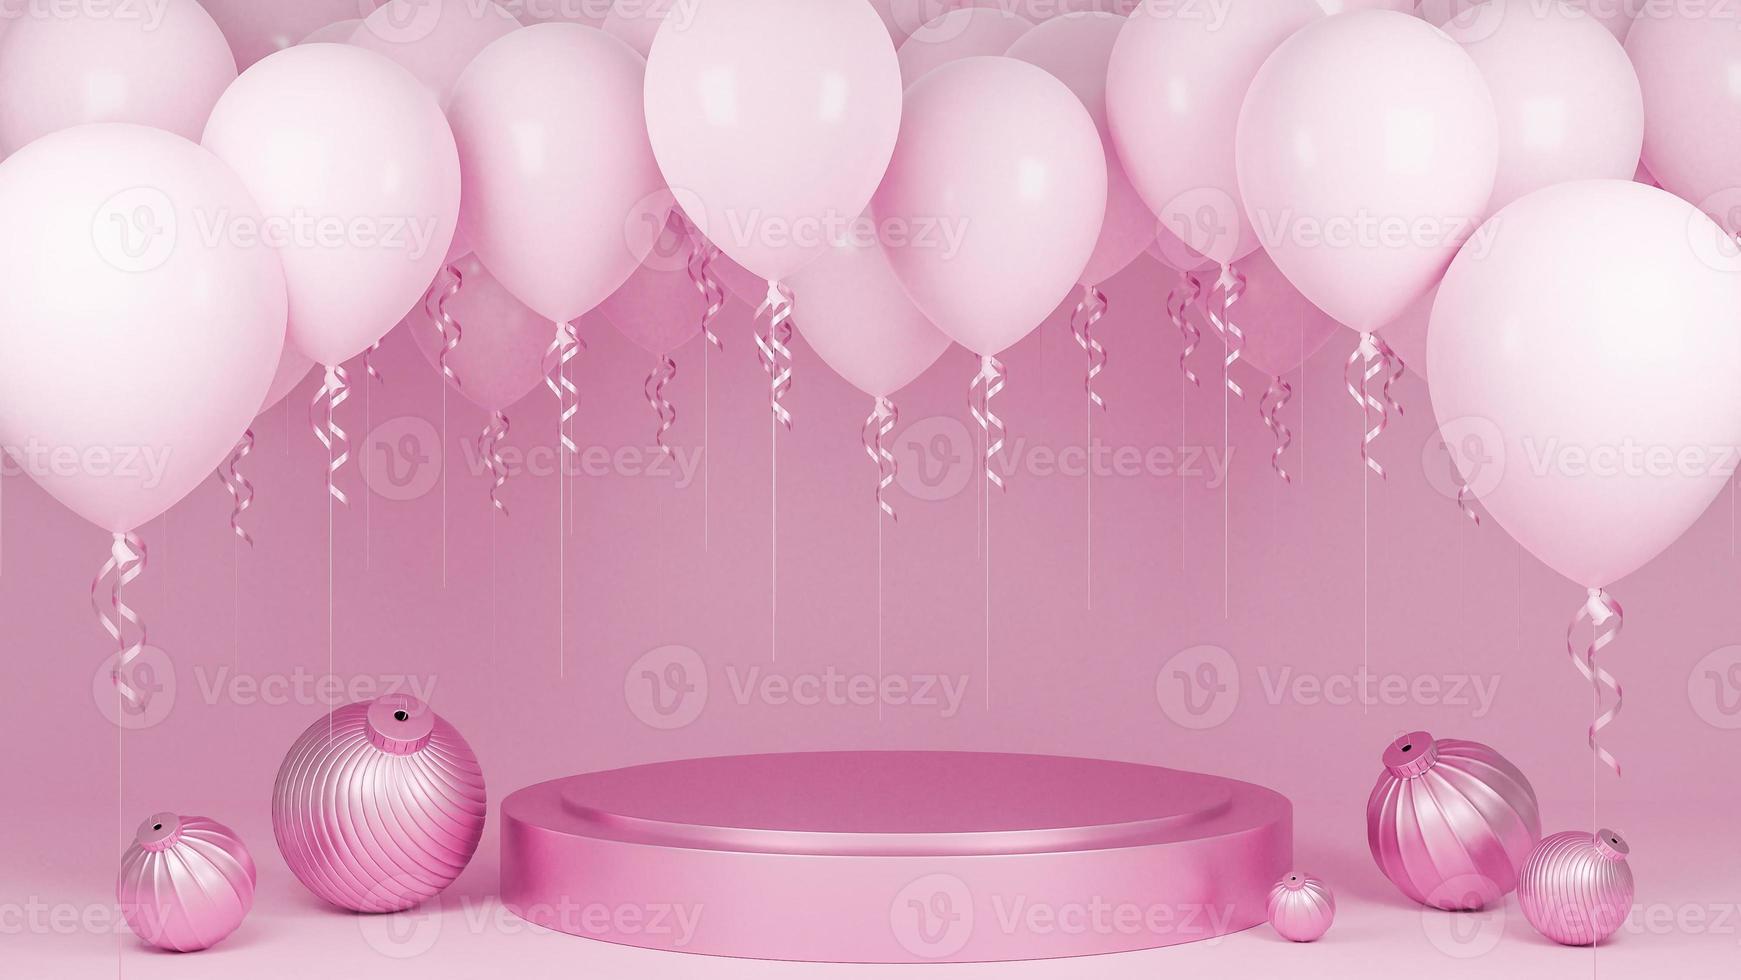 ballons roses flottant avec podium et ornement sur fond pastel rose., fête d'anniversaire et concept de nouvel an., modèle 3d et illustration. photo